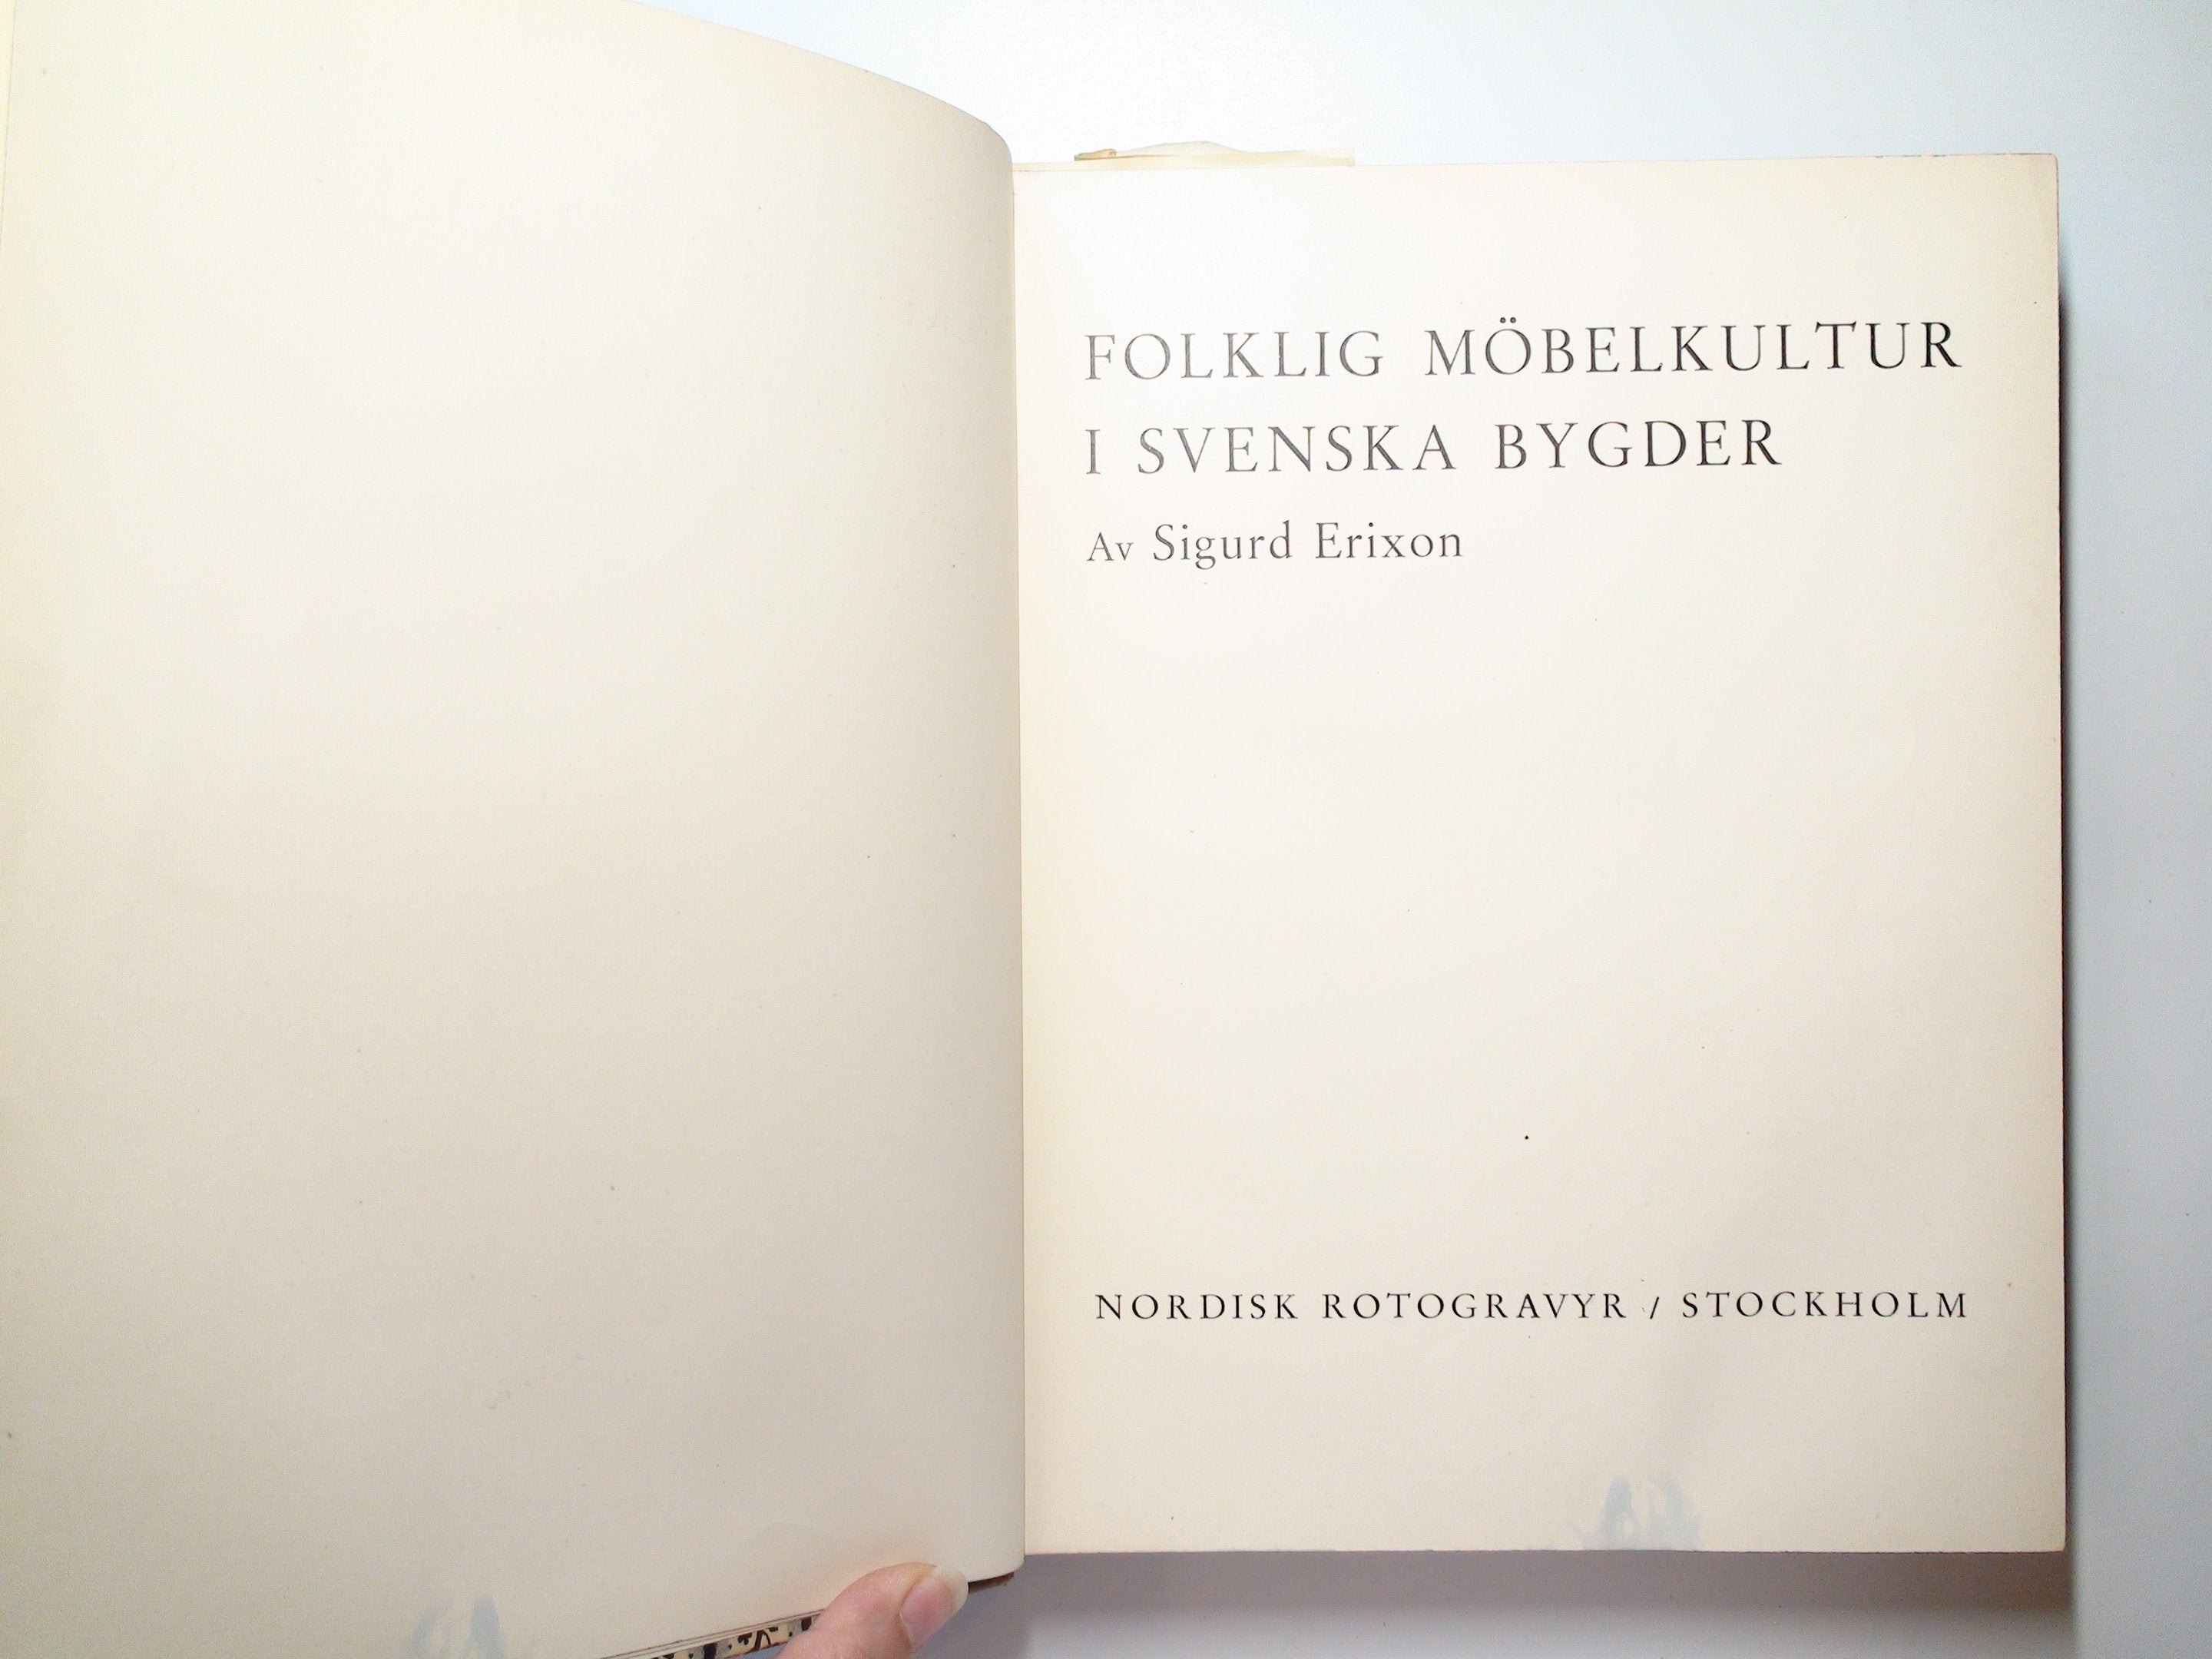 Folklig Möbelkultur i Svenska Bygder, Sigurd Erixon, Swedish, 1st Ed, 1938